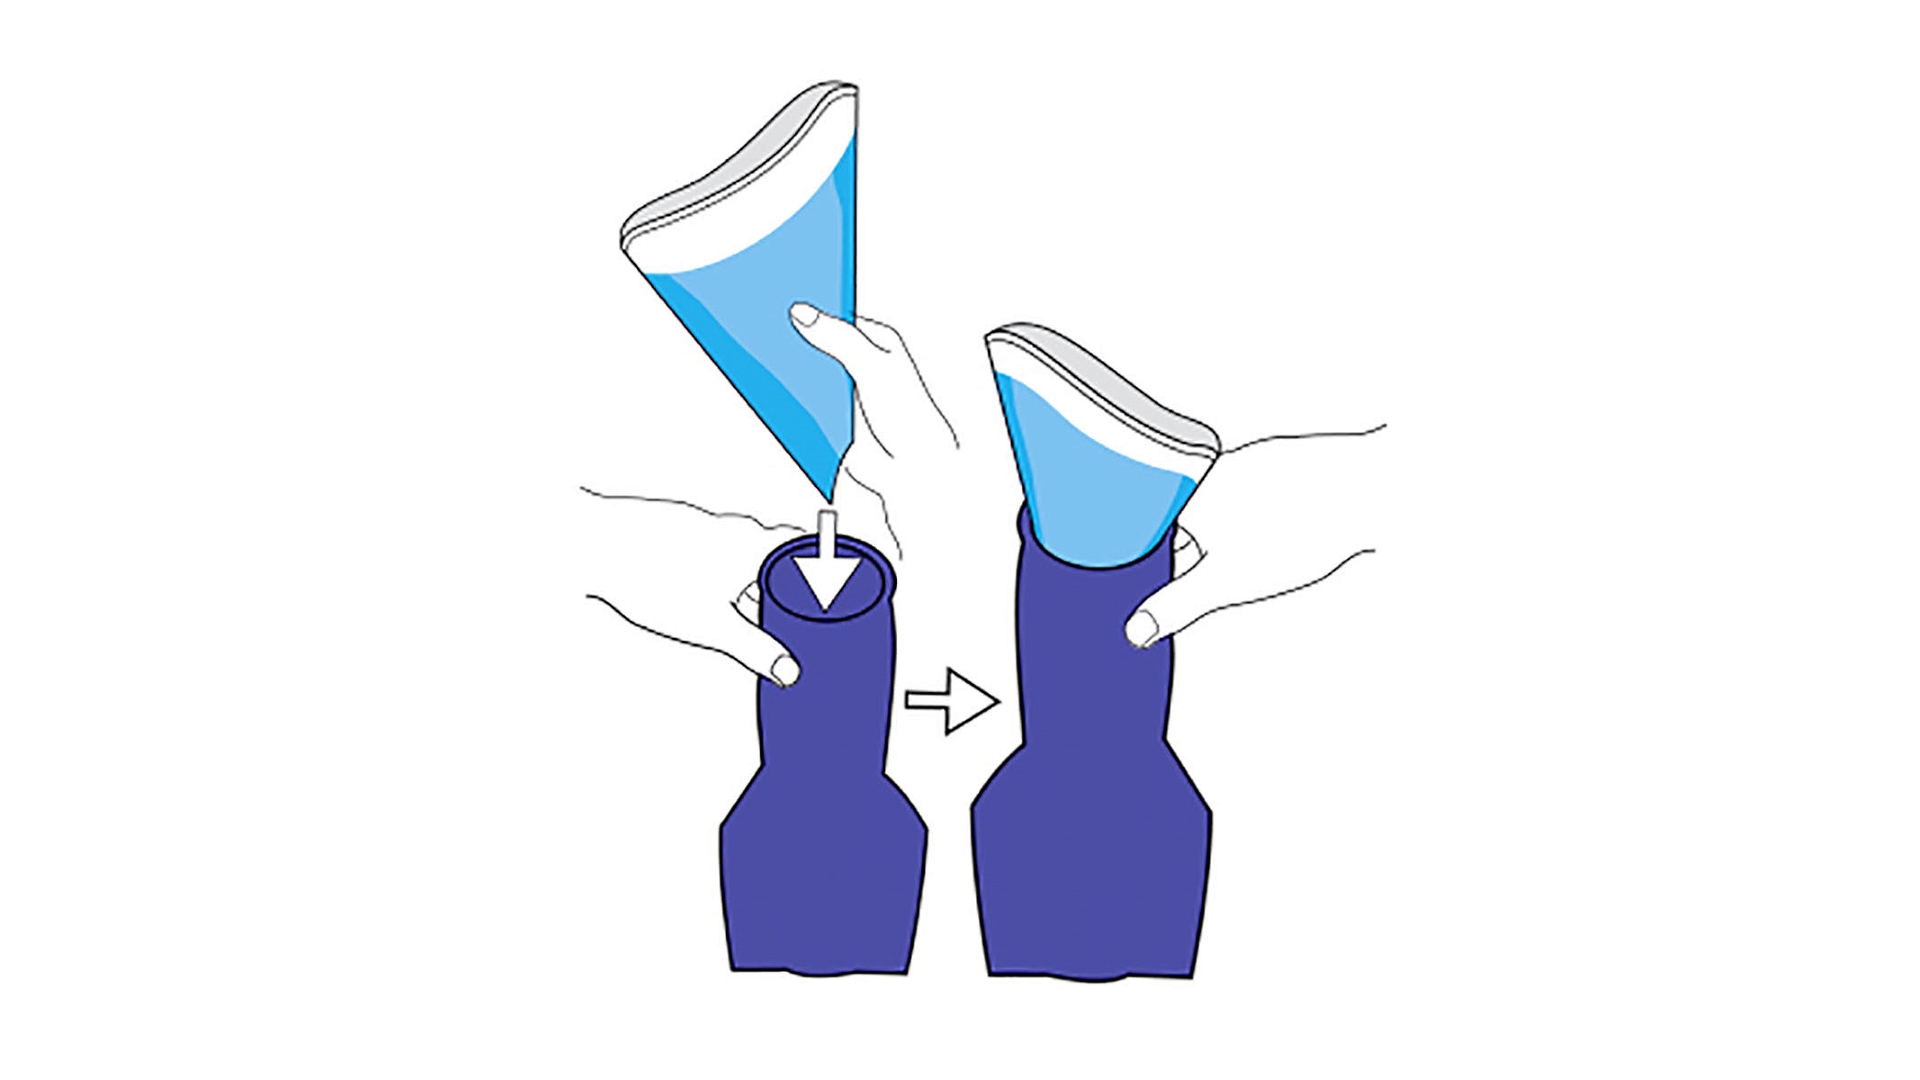 2 Skizzen von blauen, nach oben schmaler werdenden Beuteln, von einer Hand gehalten. Gezeigt wird, wie ein zusätzlicher trichterförmiger Einsatz eingeführt wird, der sich der weiblichen Anatomie anpassen und das wäschschonende Urinieren ermöglichen soll 